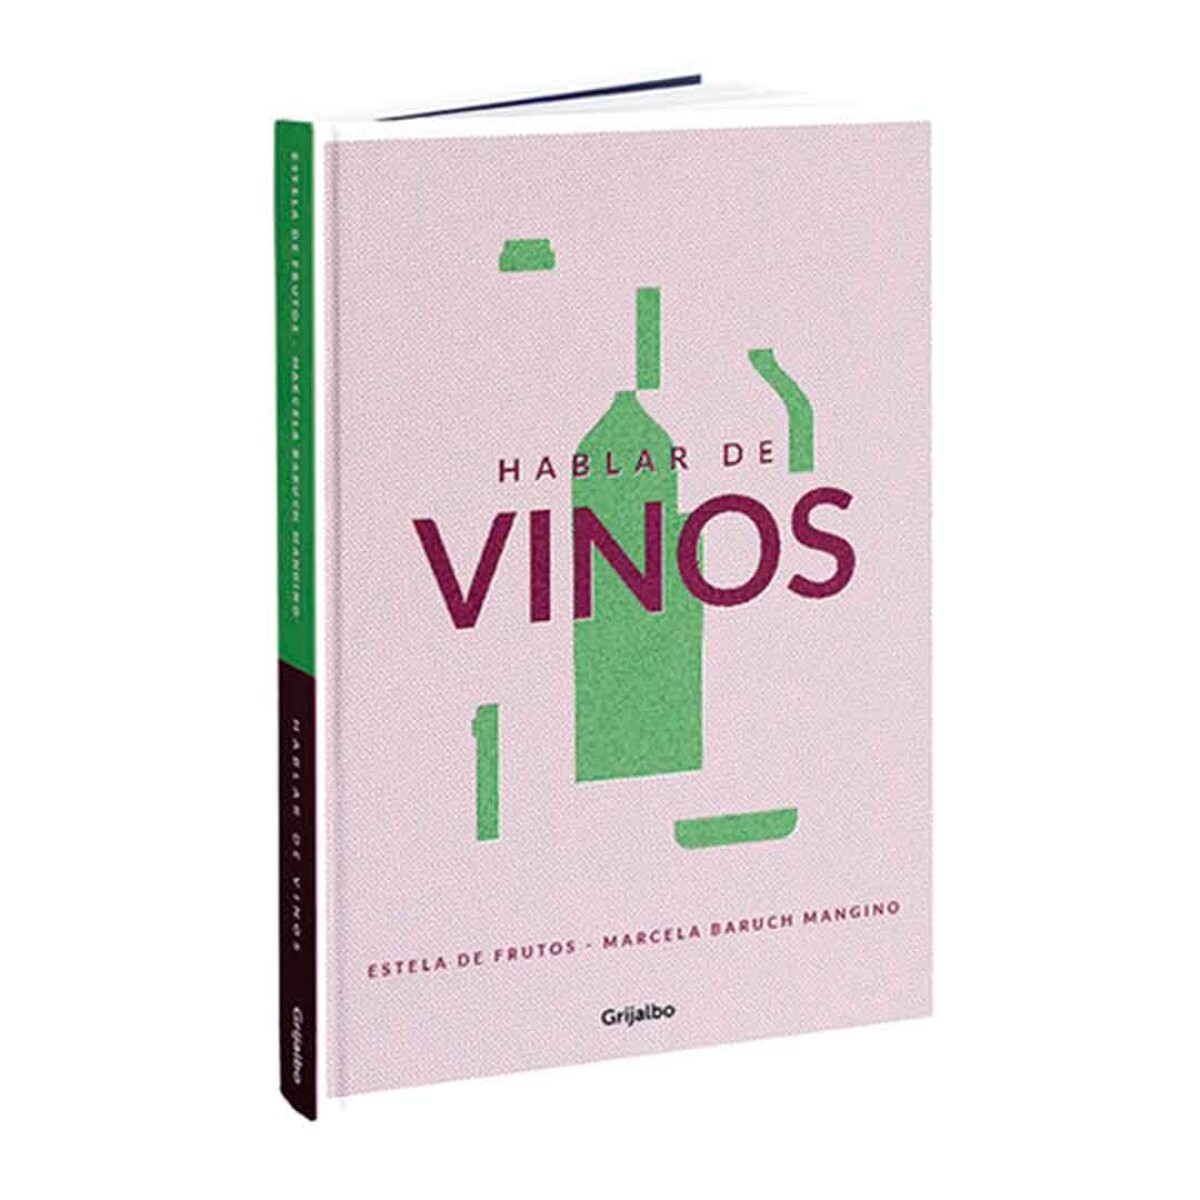 Libro Hablar de Vinos by E.De Frutos y M.Mangino - 001 